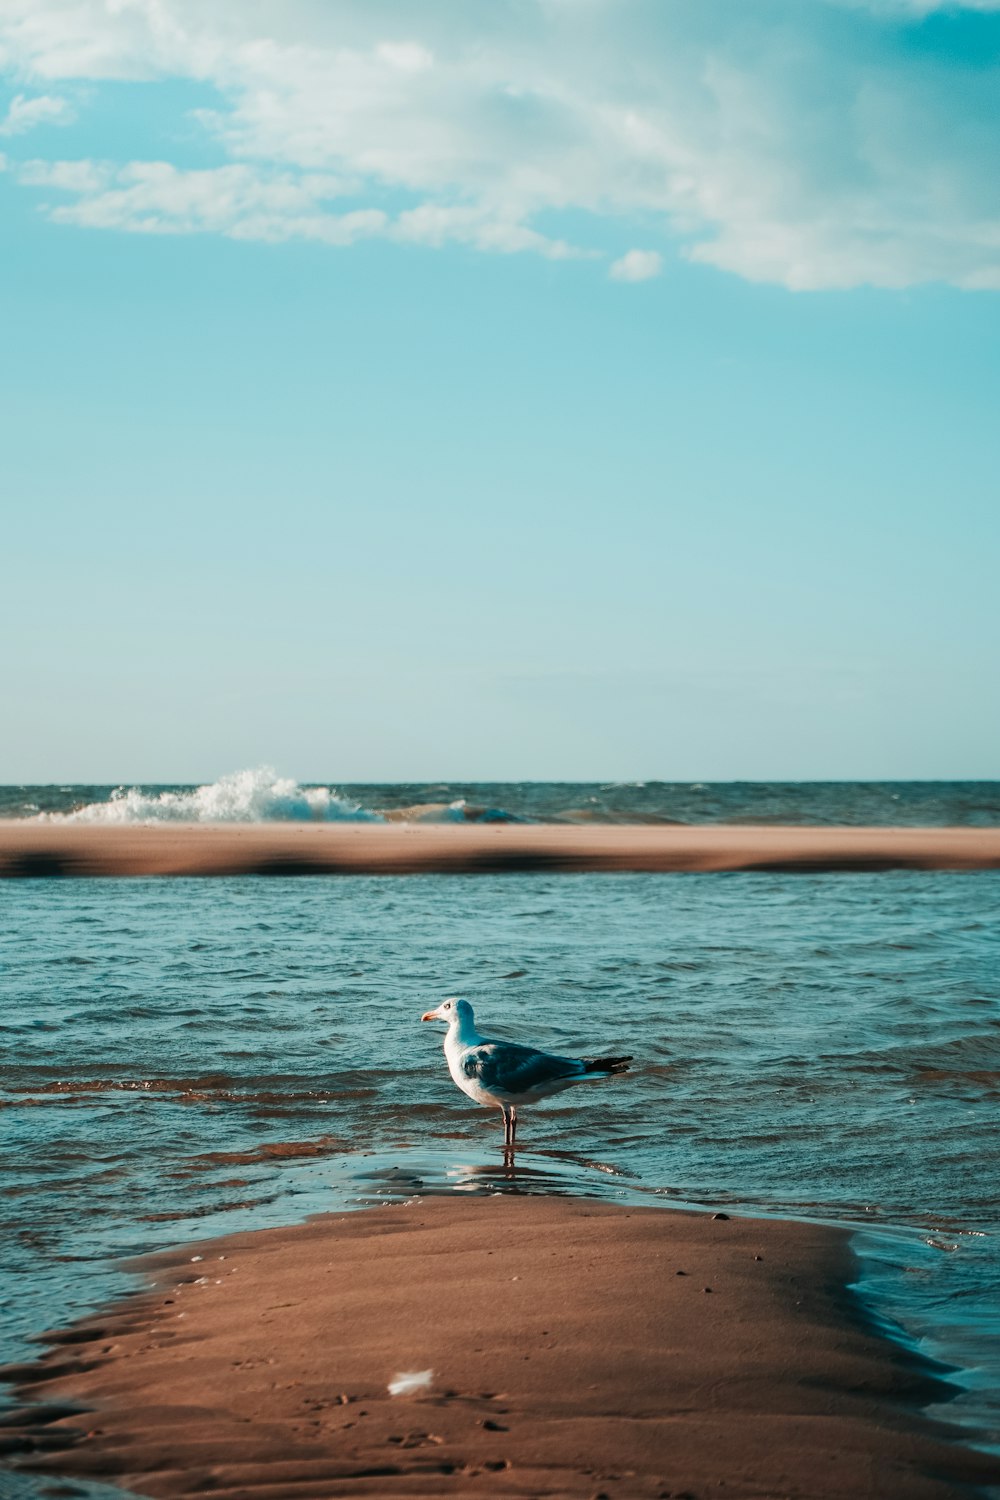 pájaro blanco y negro volando sobre el mar durante el día